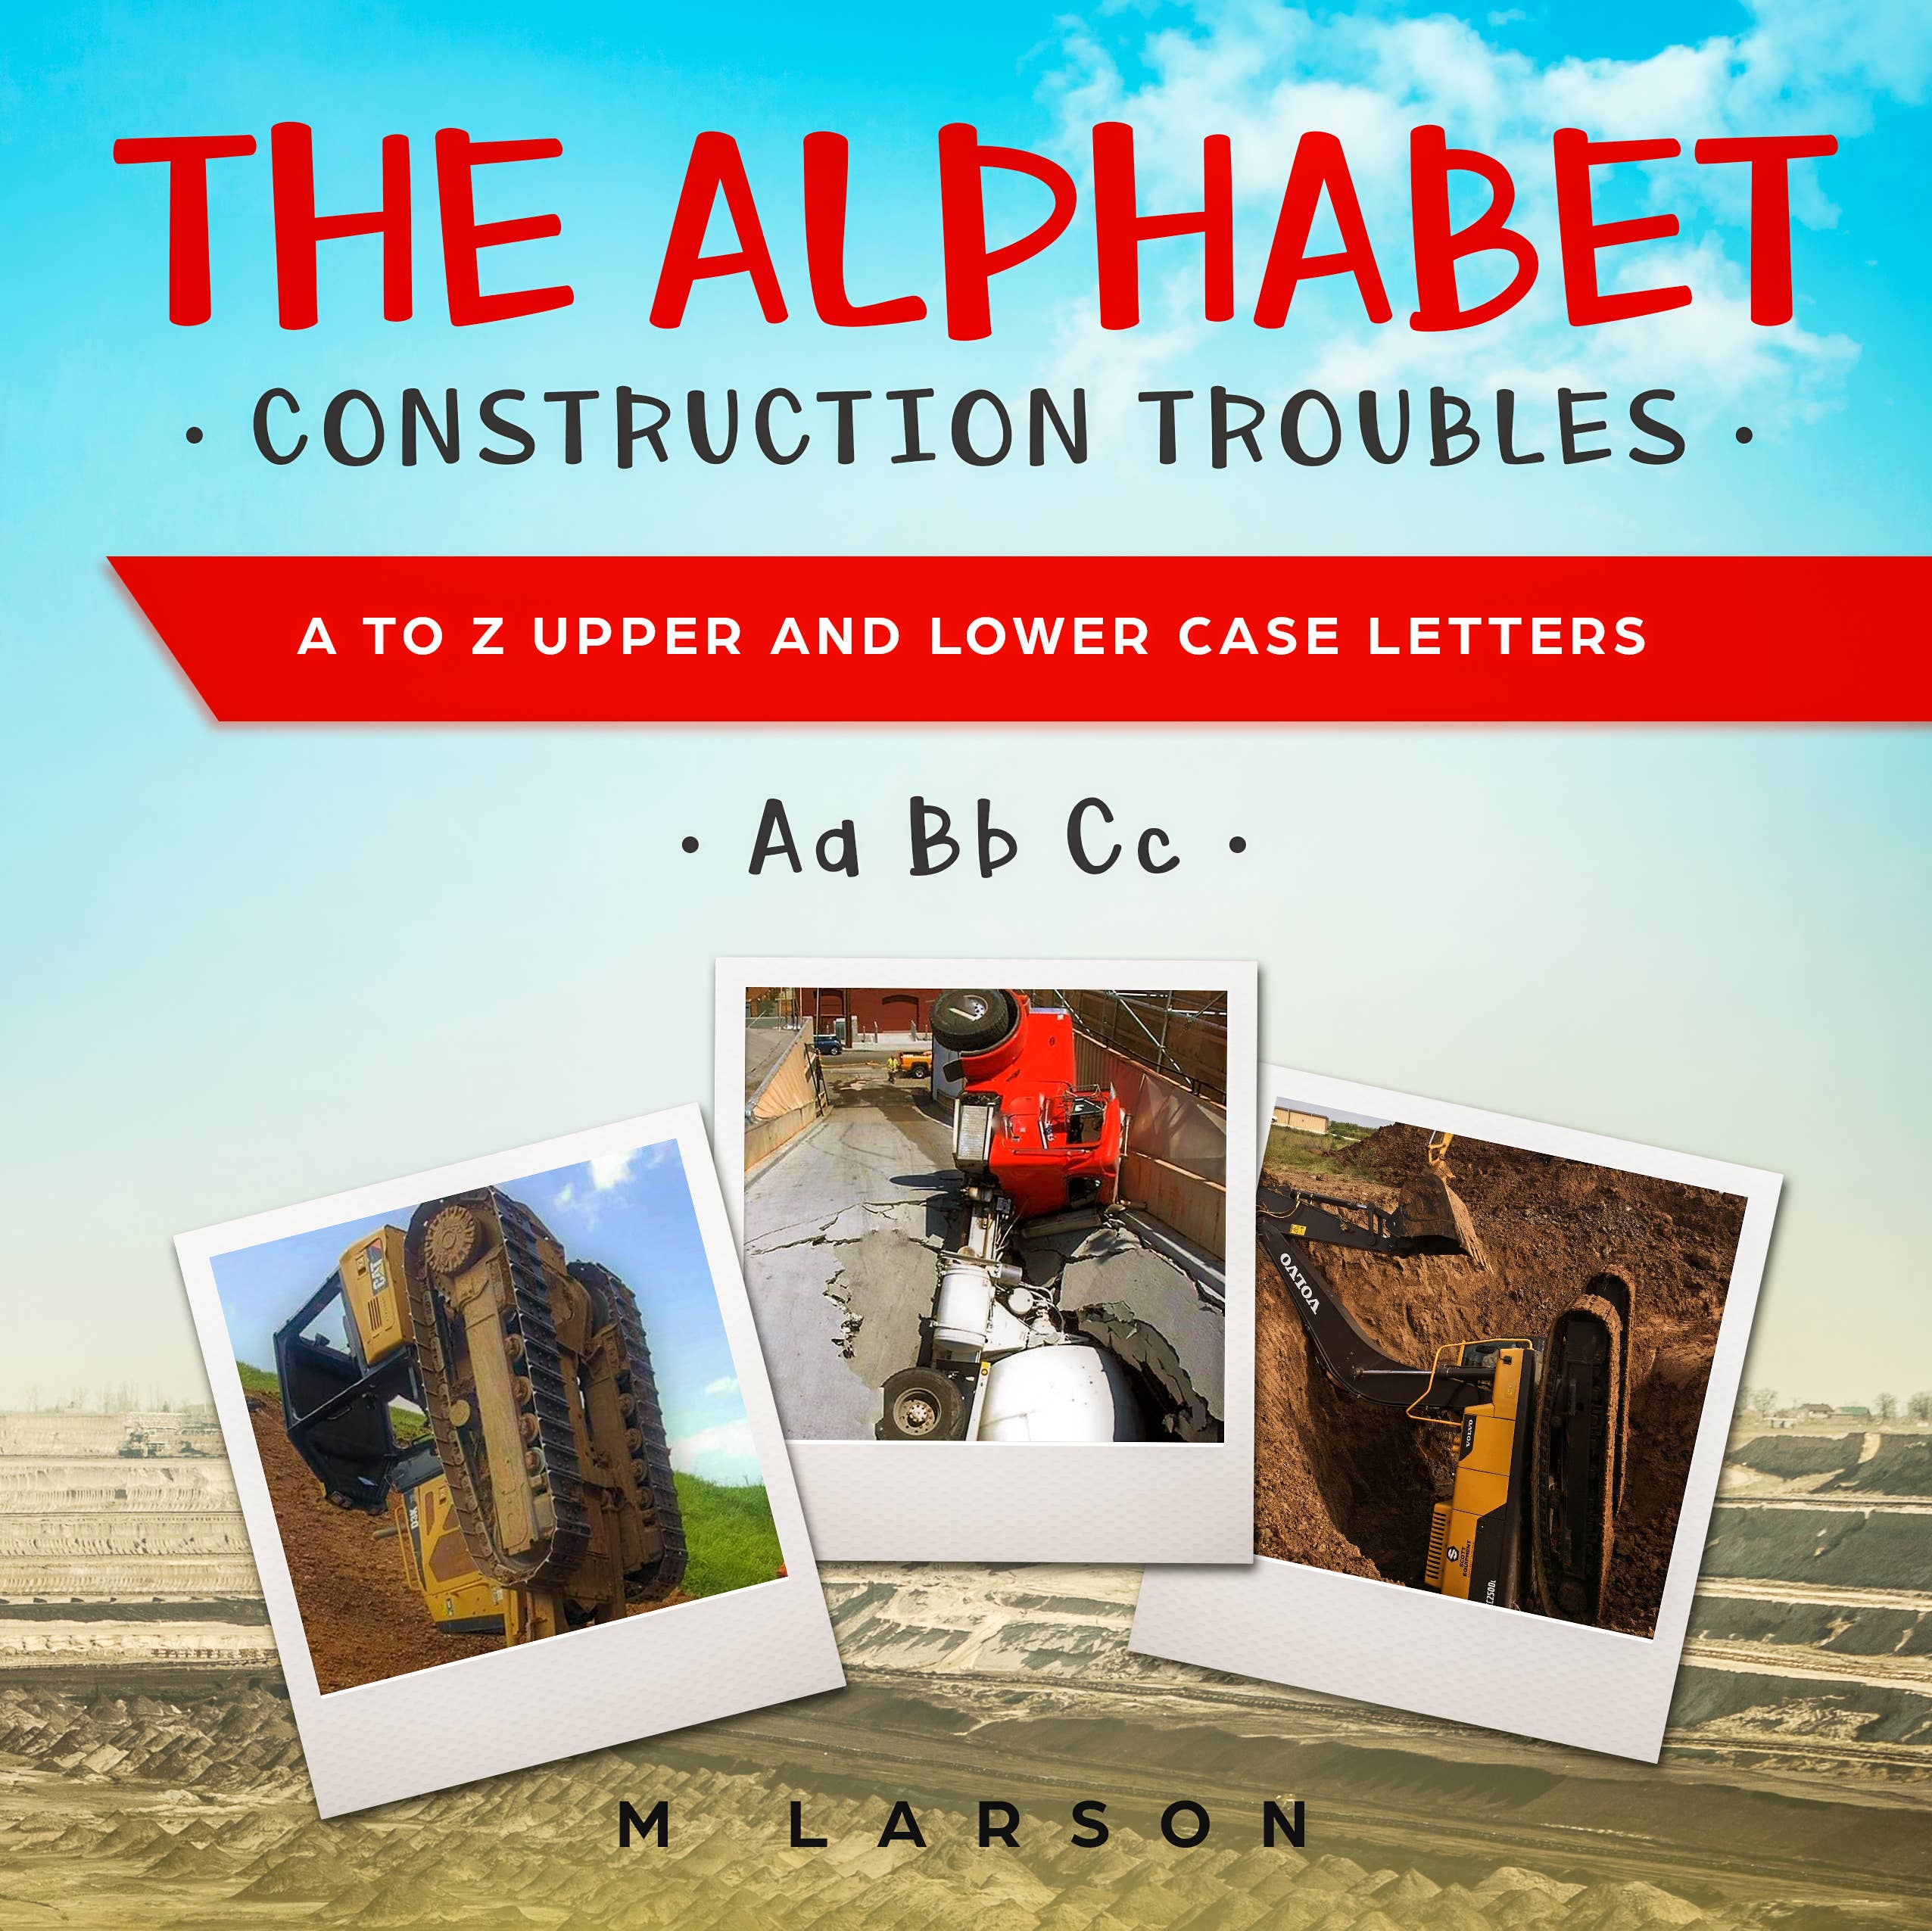 The Alphabet Construction Troubles book